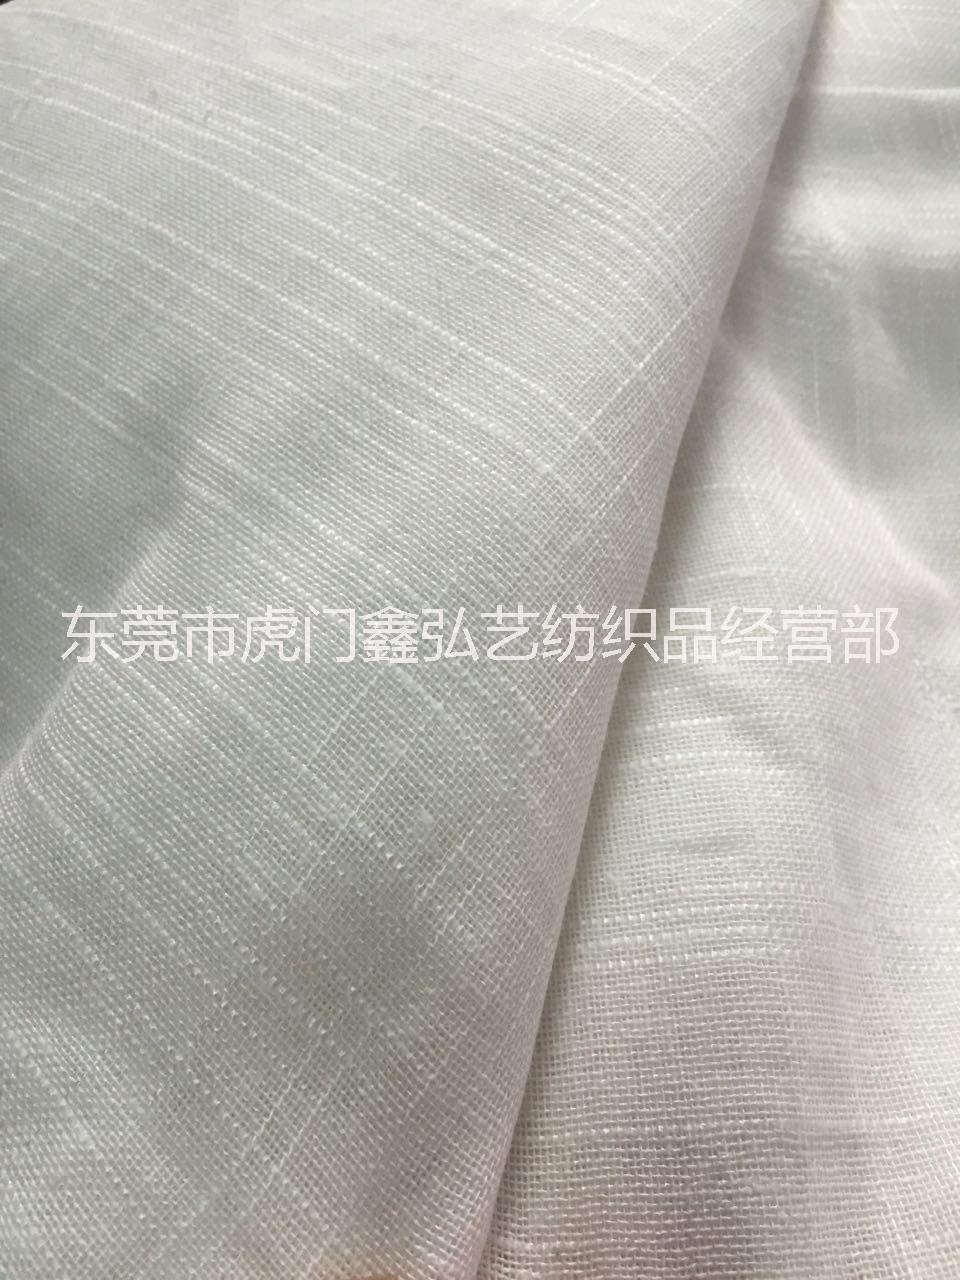 广东广东棉纱竹节布厂家直销天然亚麻类棉布 环保居家家纺用布现货供应